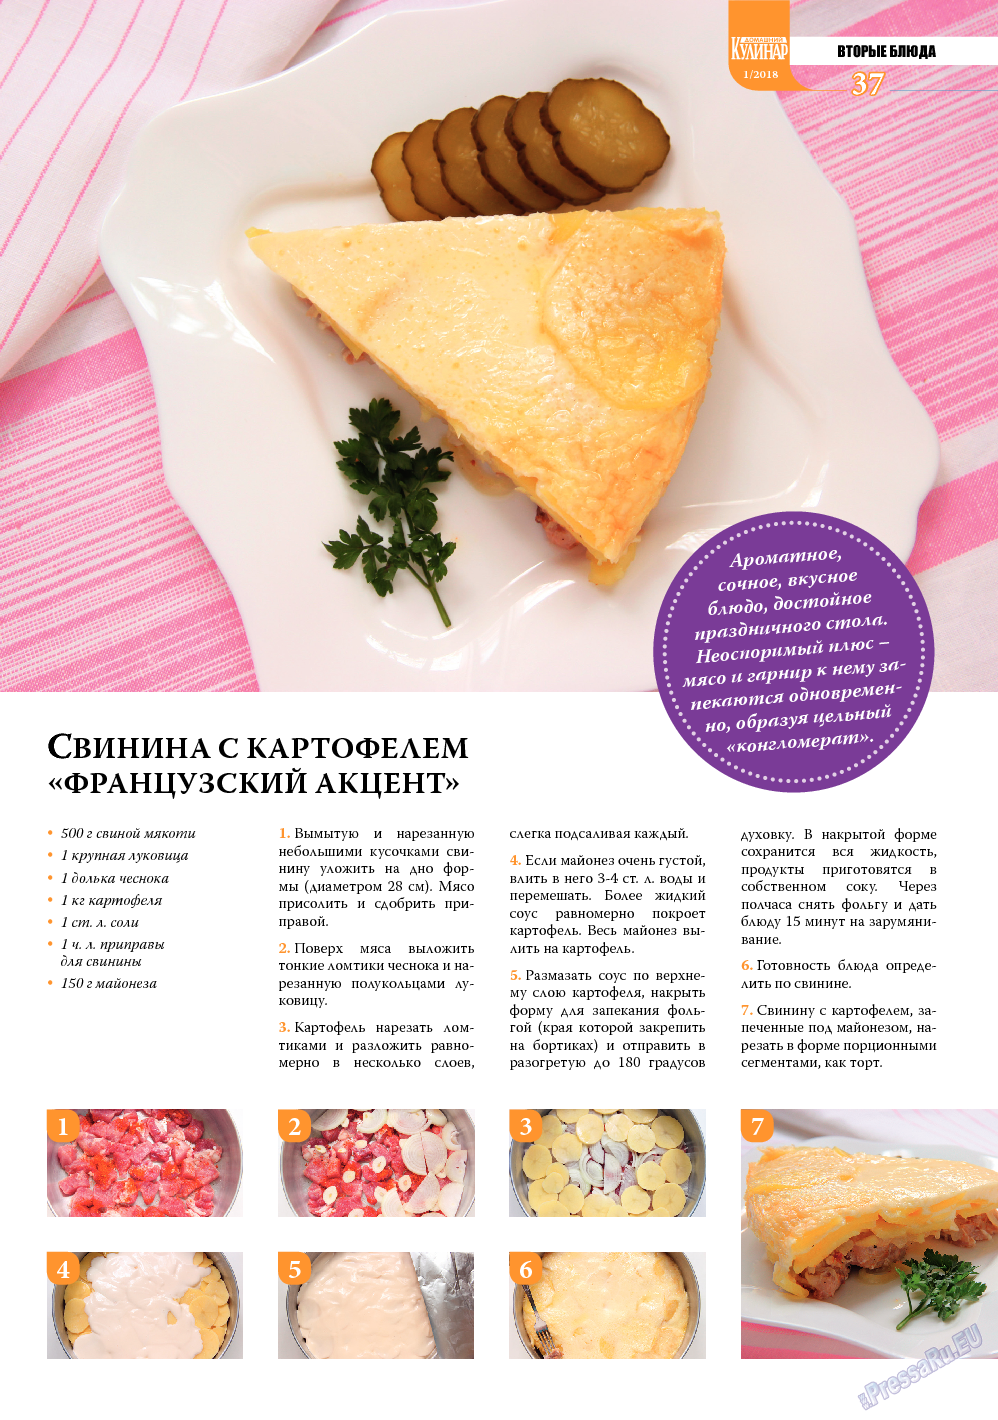 Домашний кулинар, журнал. 2018 №1 стр.37